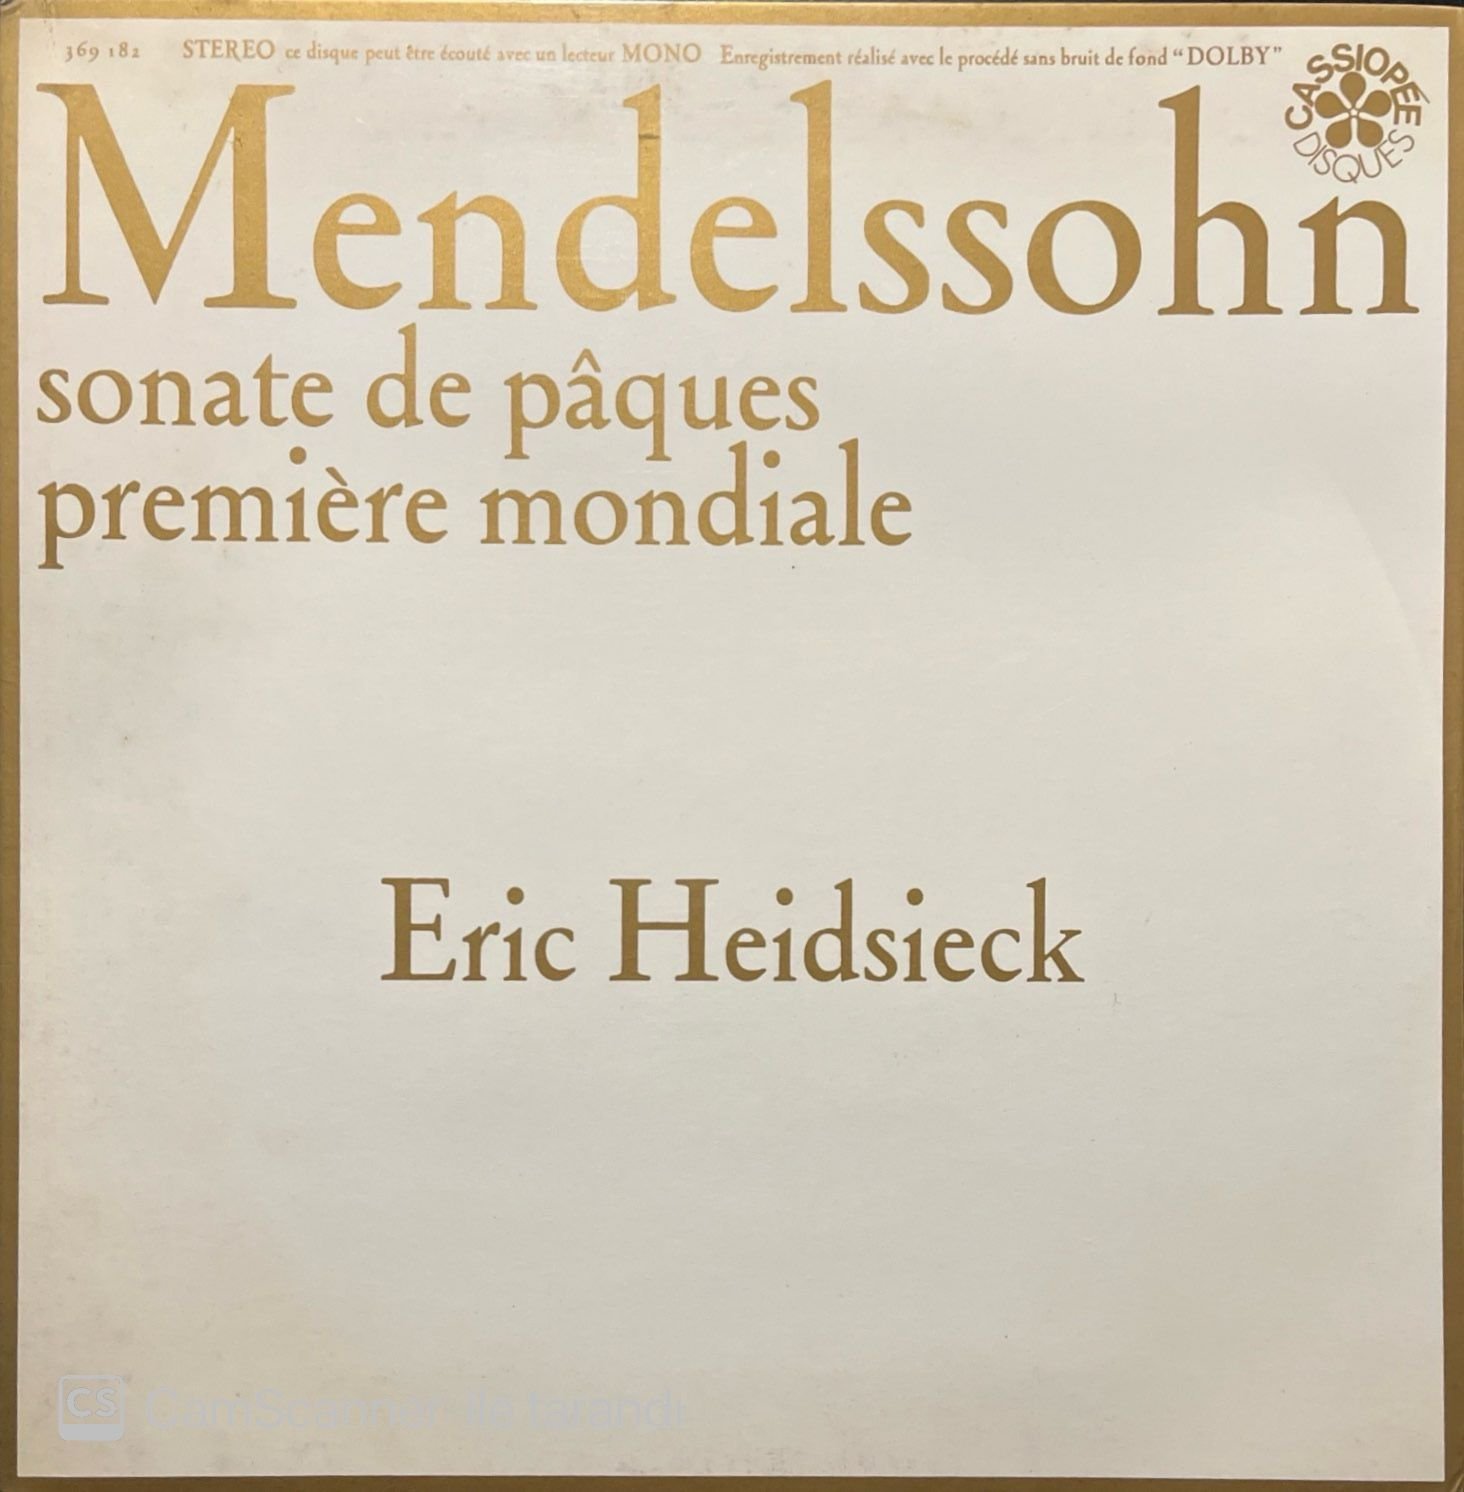 Eric Heidsieck Mendelssohn Sonate De Paques LP Plak